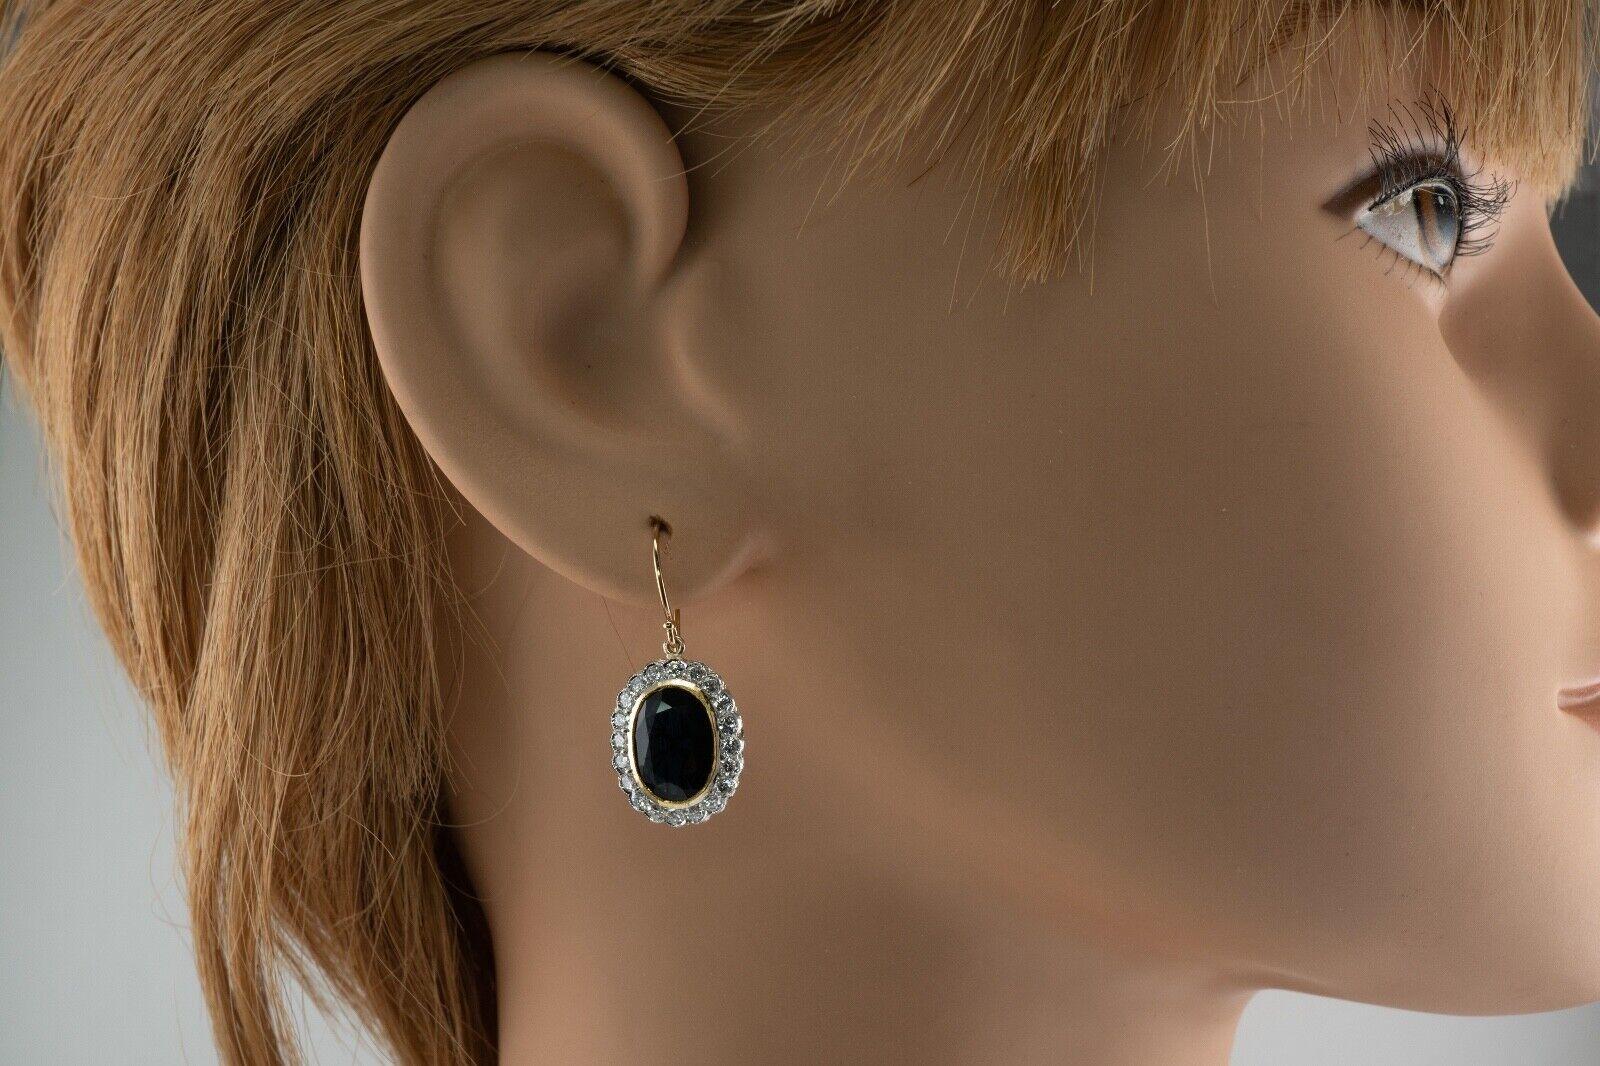 vintage sapphire earrings